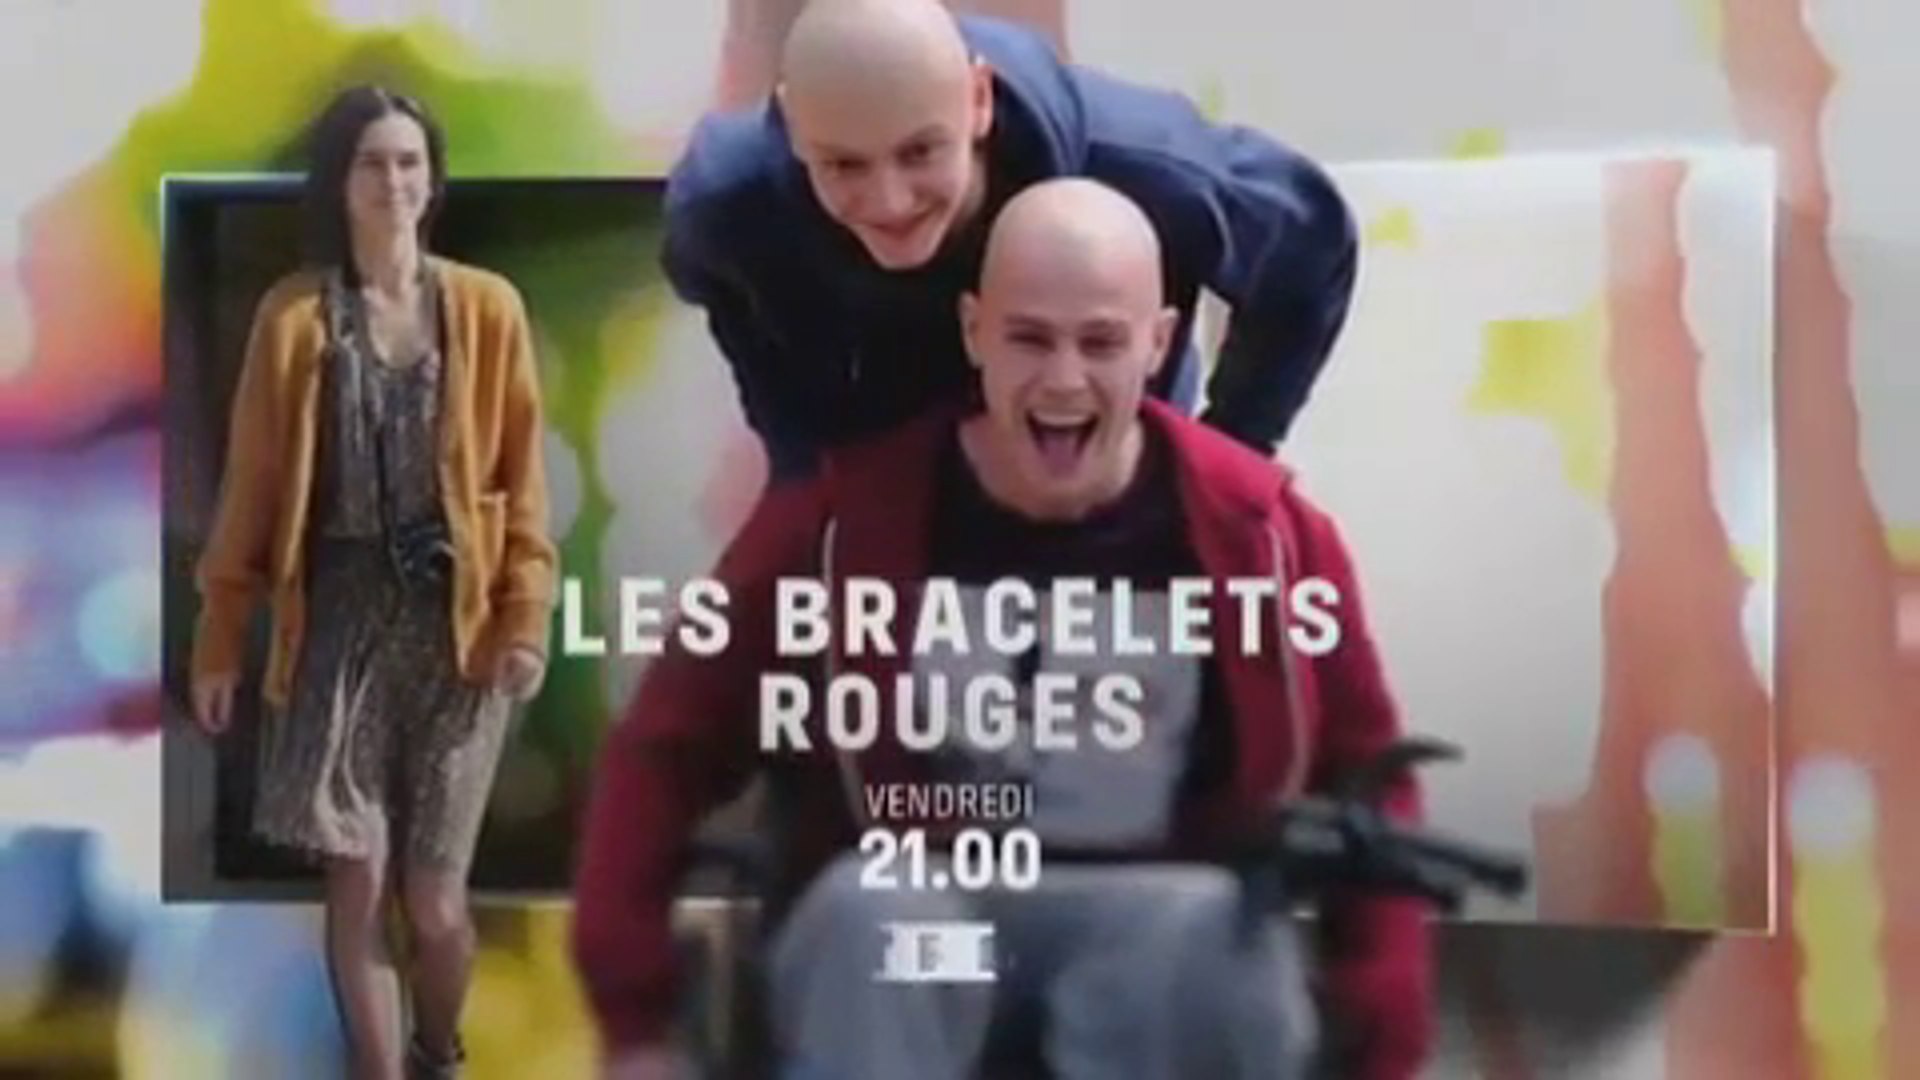 Les bracelets rouges - TF1 series films - 09 02 18 - Vidéo Dailymotion